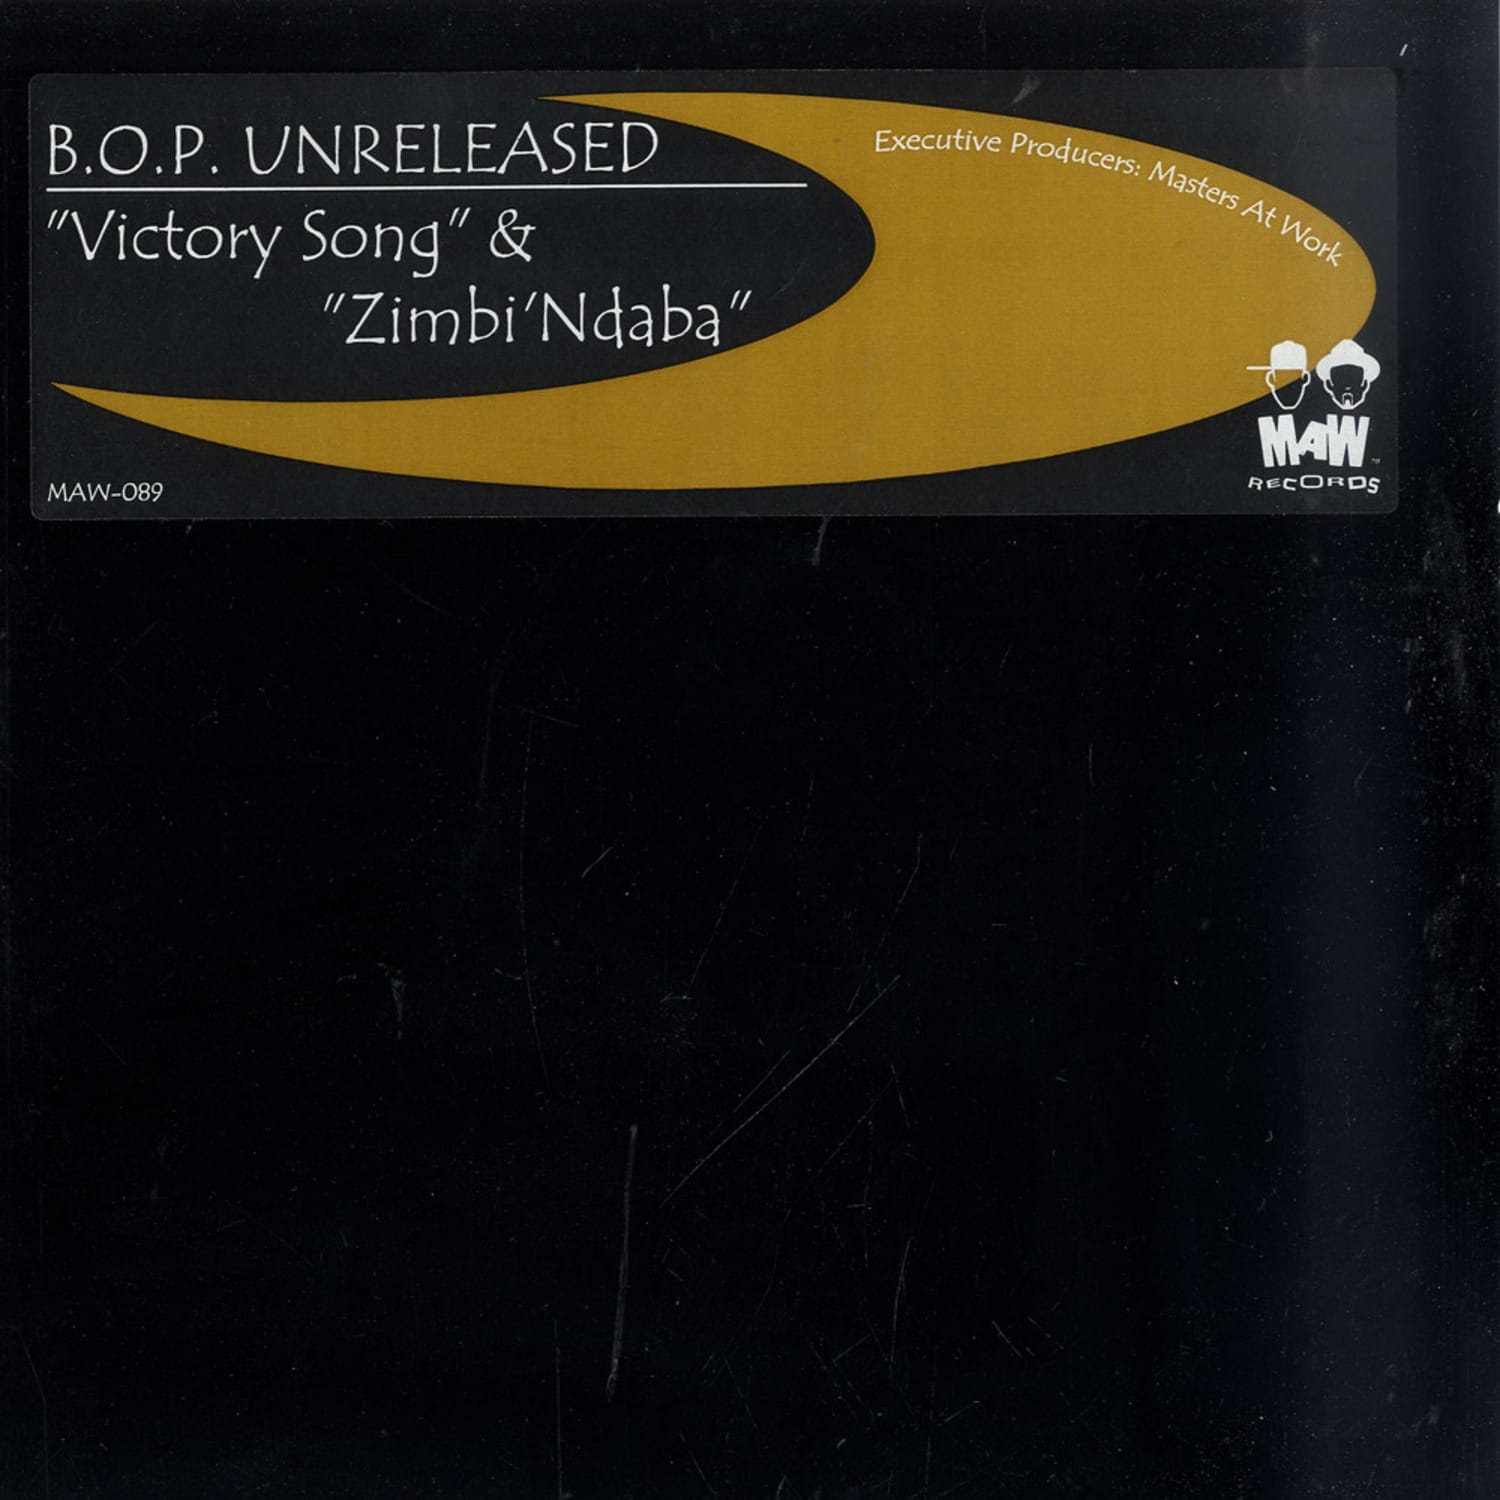 Bop Unreleased - VICTORY SONG / ZABALAZA